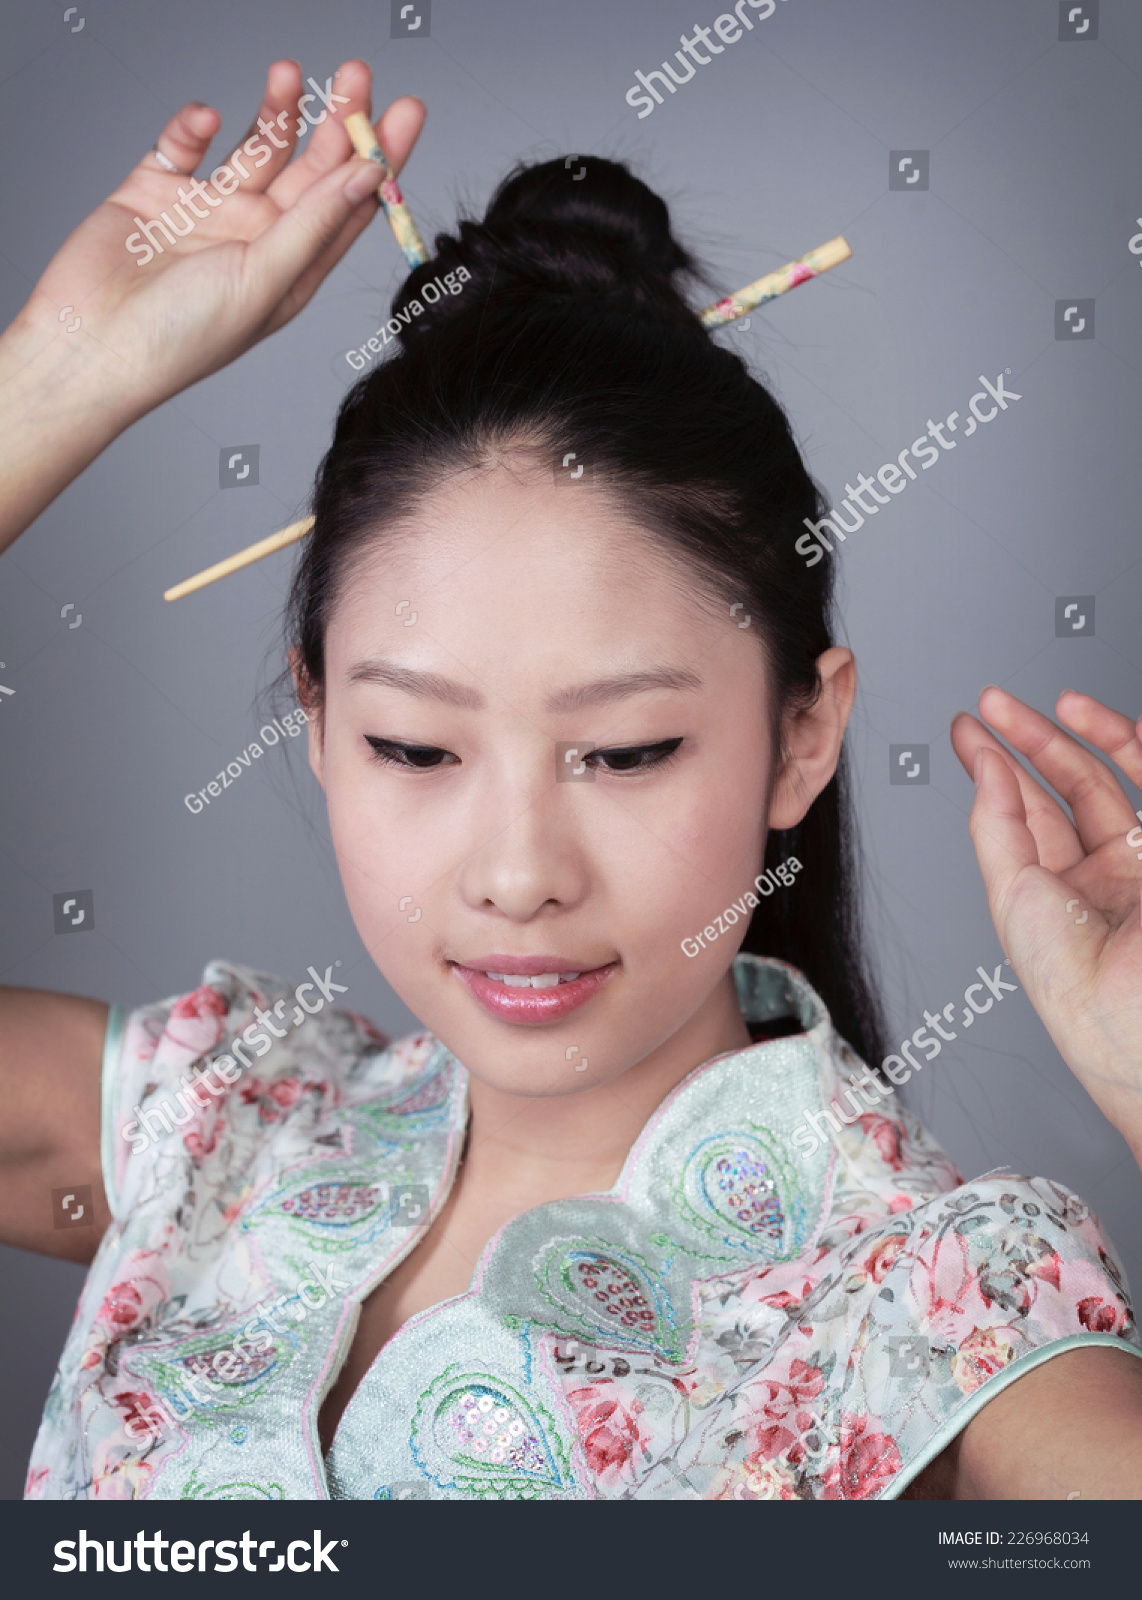 chinese chopsticks in hair